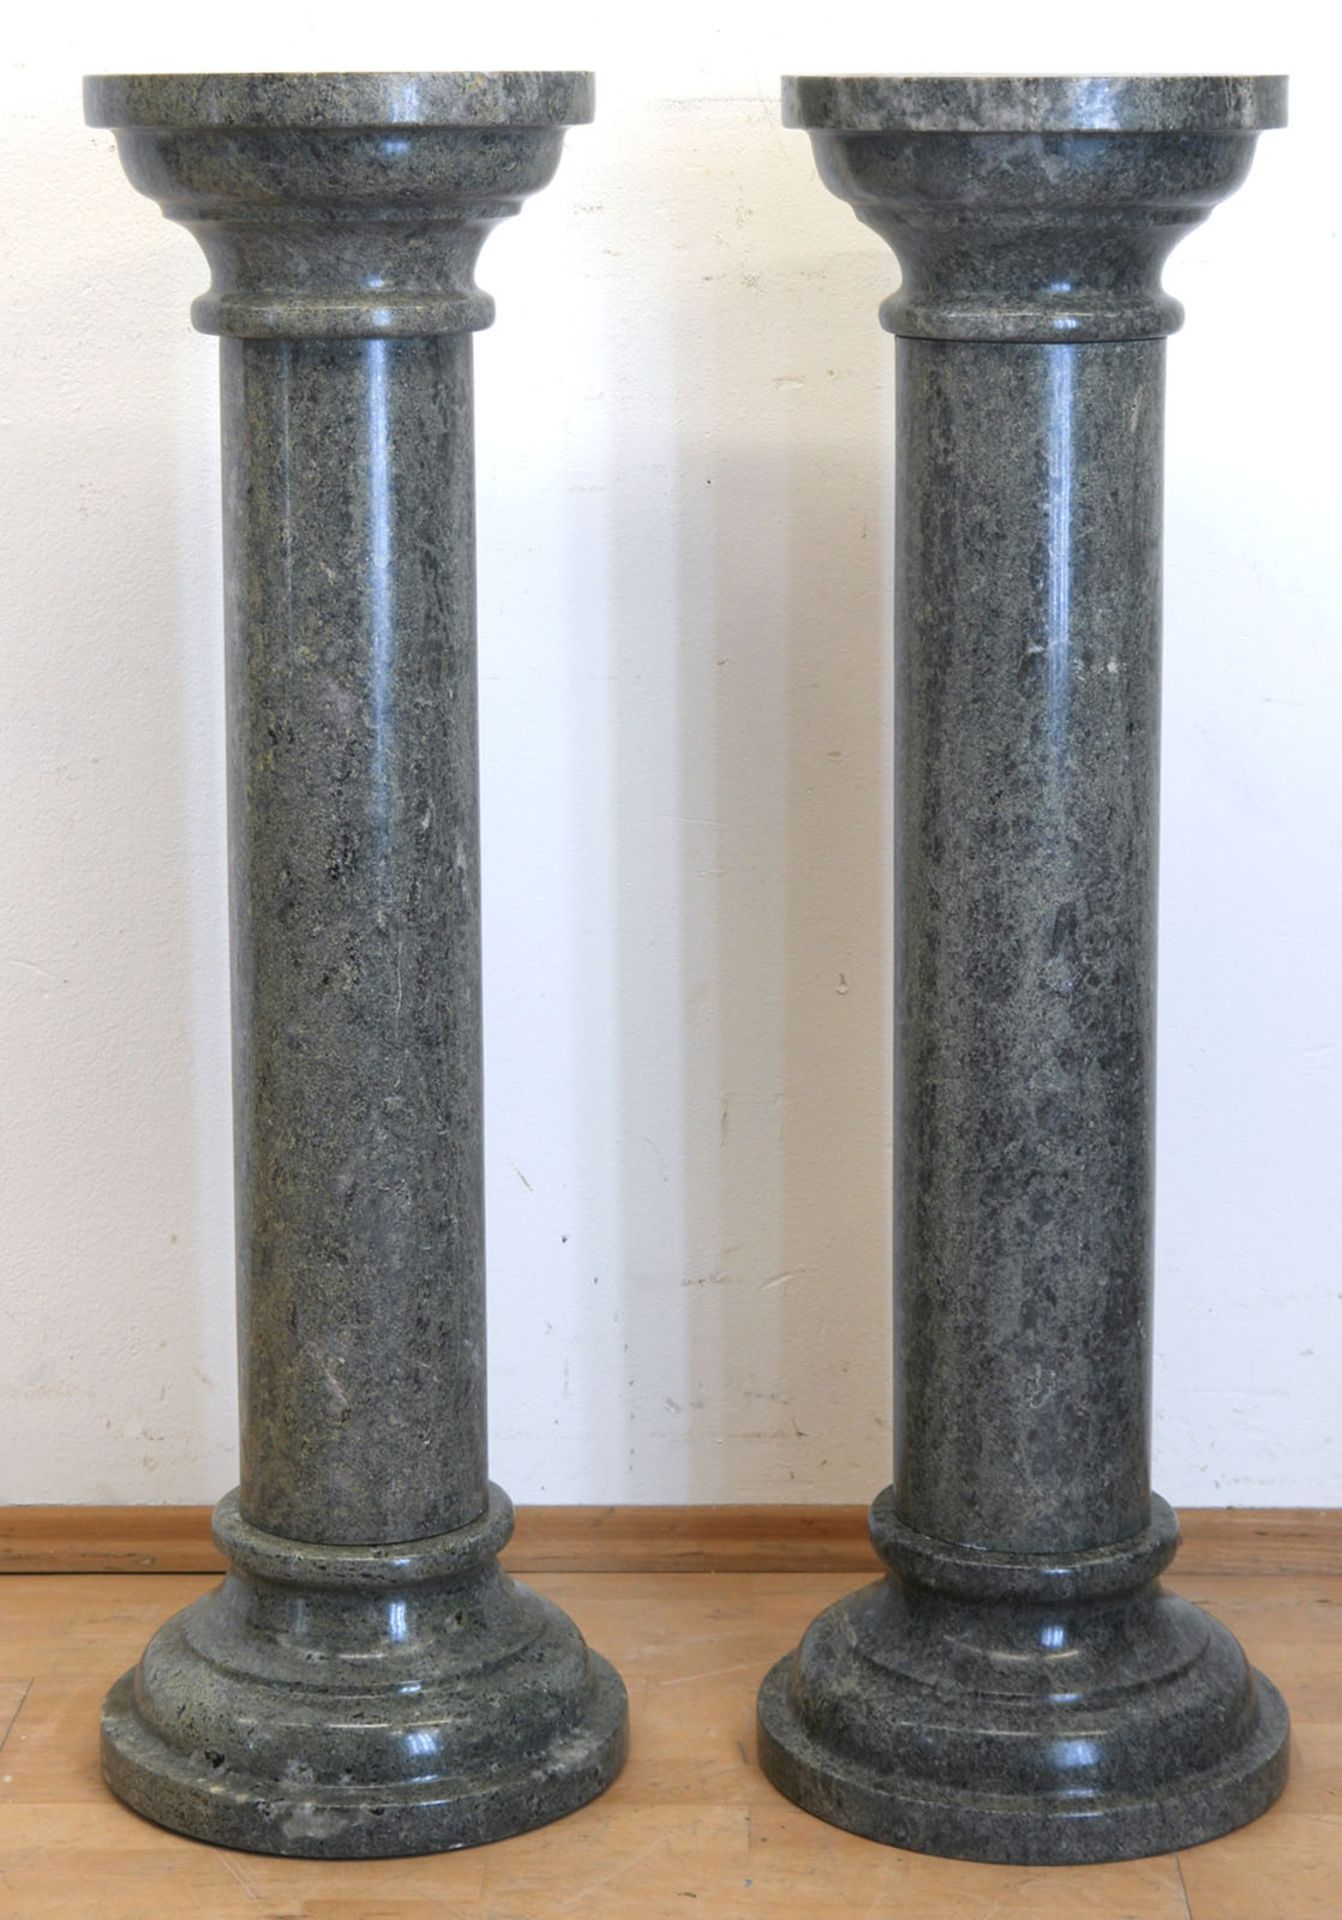 Paar Marmorsäulen, grün, 3-teilig, über rundem profiliertem Stand zylindrische Säule mit rundem Abs